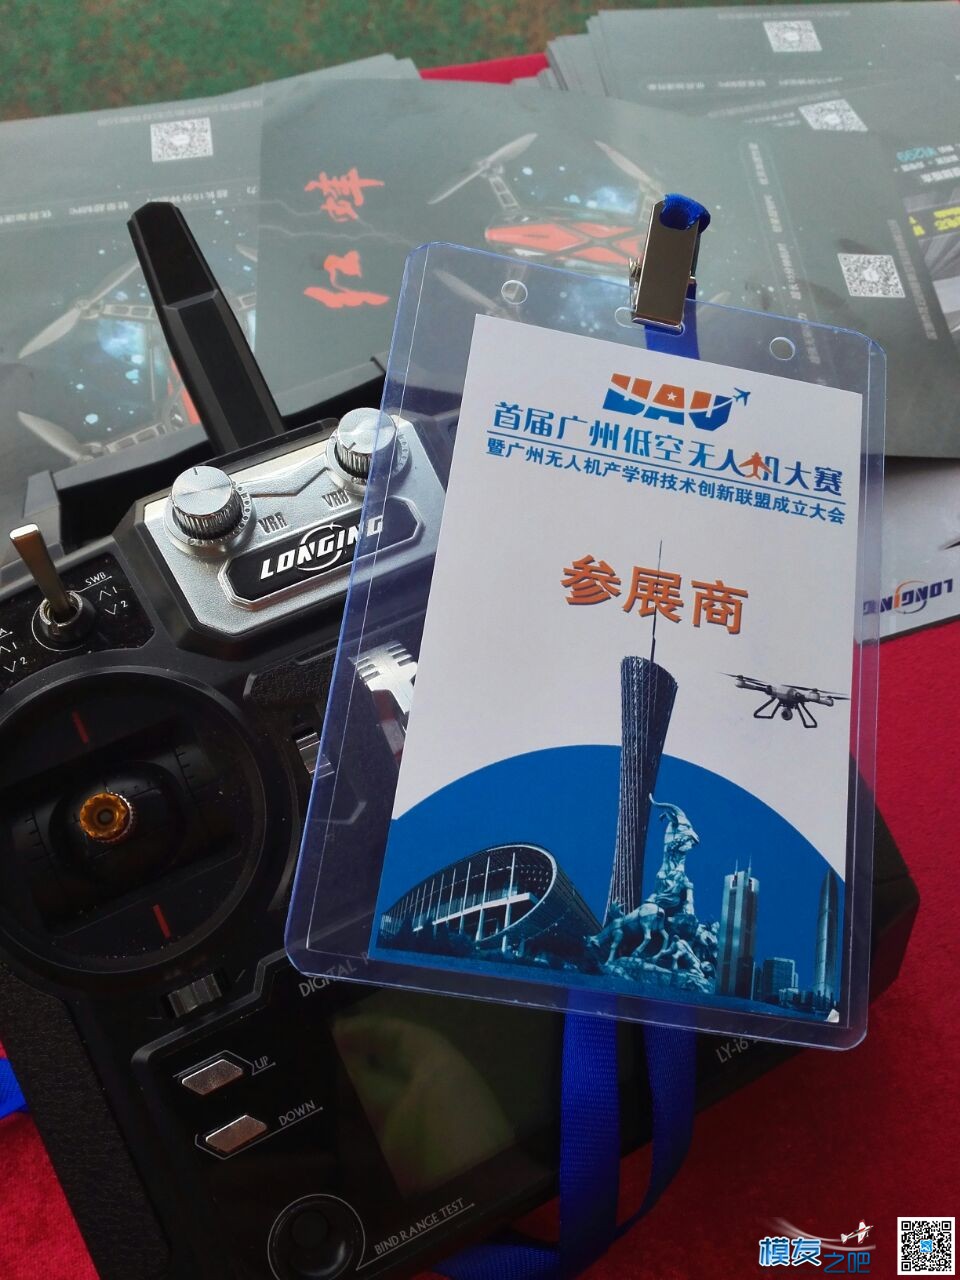 首届广州低空无人机竞赛，龙云受邀参加比赛和展览！！！ 无人机,穿越机,多旋翼,固定翼,直升机 作者:龙云穿越 4358 